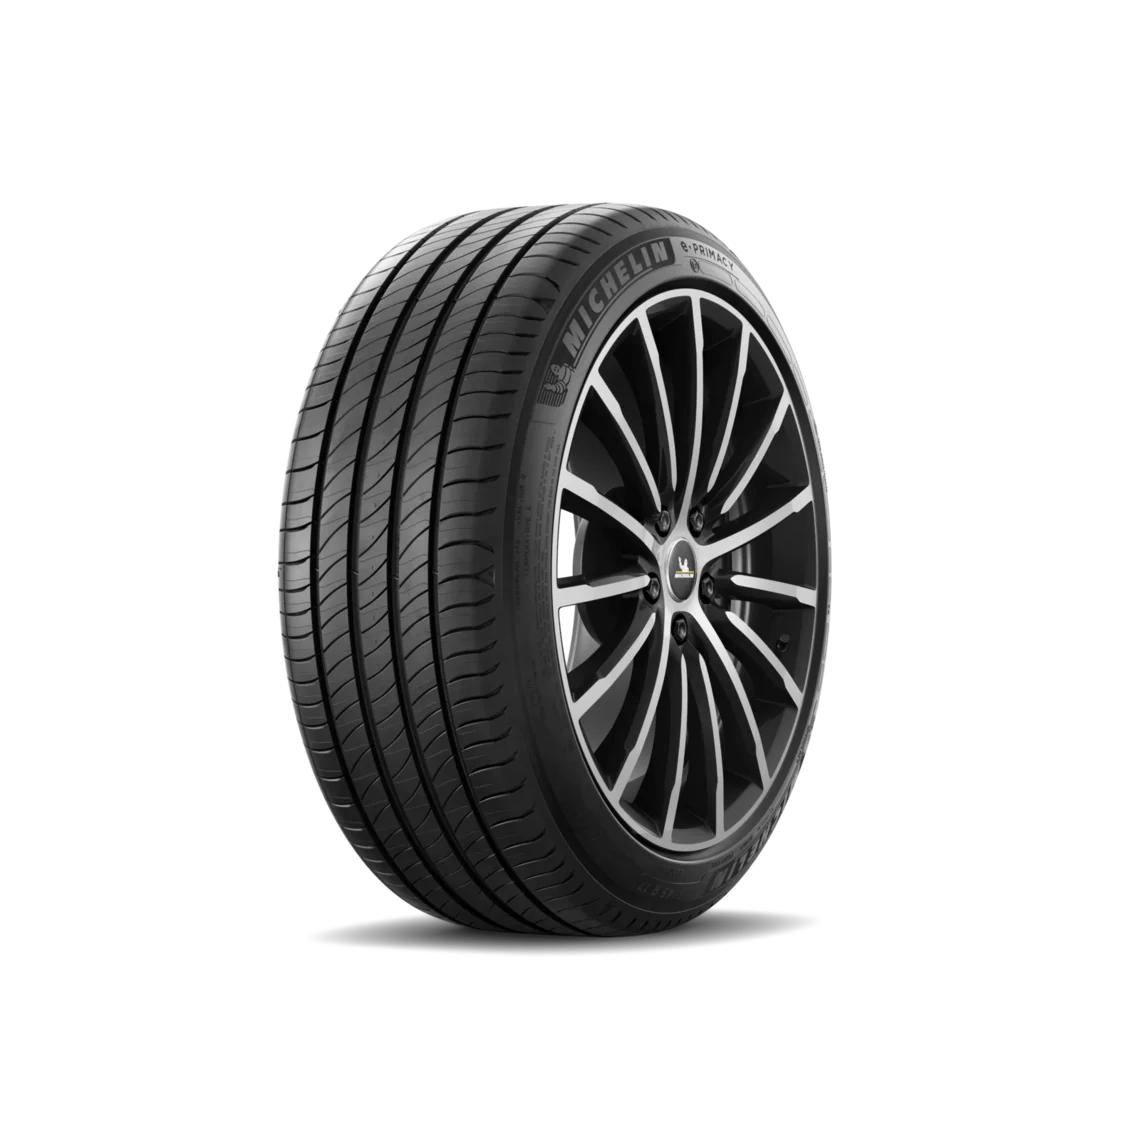 Michelin Michelin 225/55 R19 103V E PRIMACY XL pneumatici nuovi Estivo 